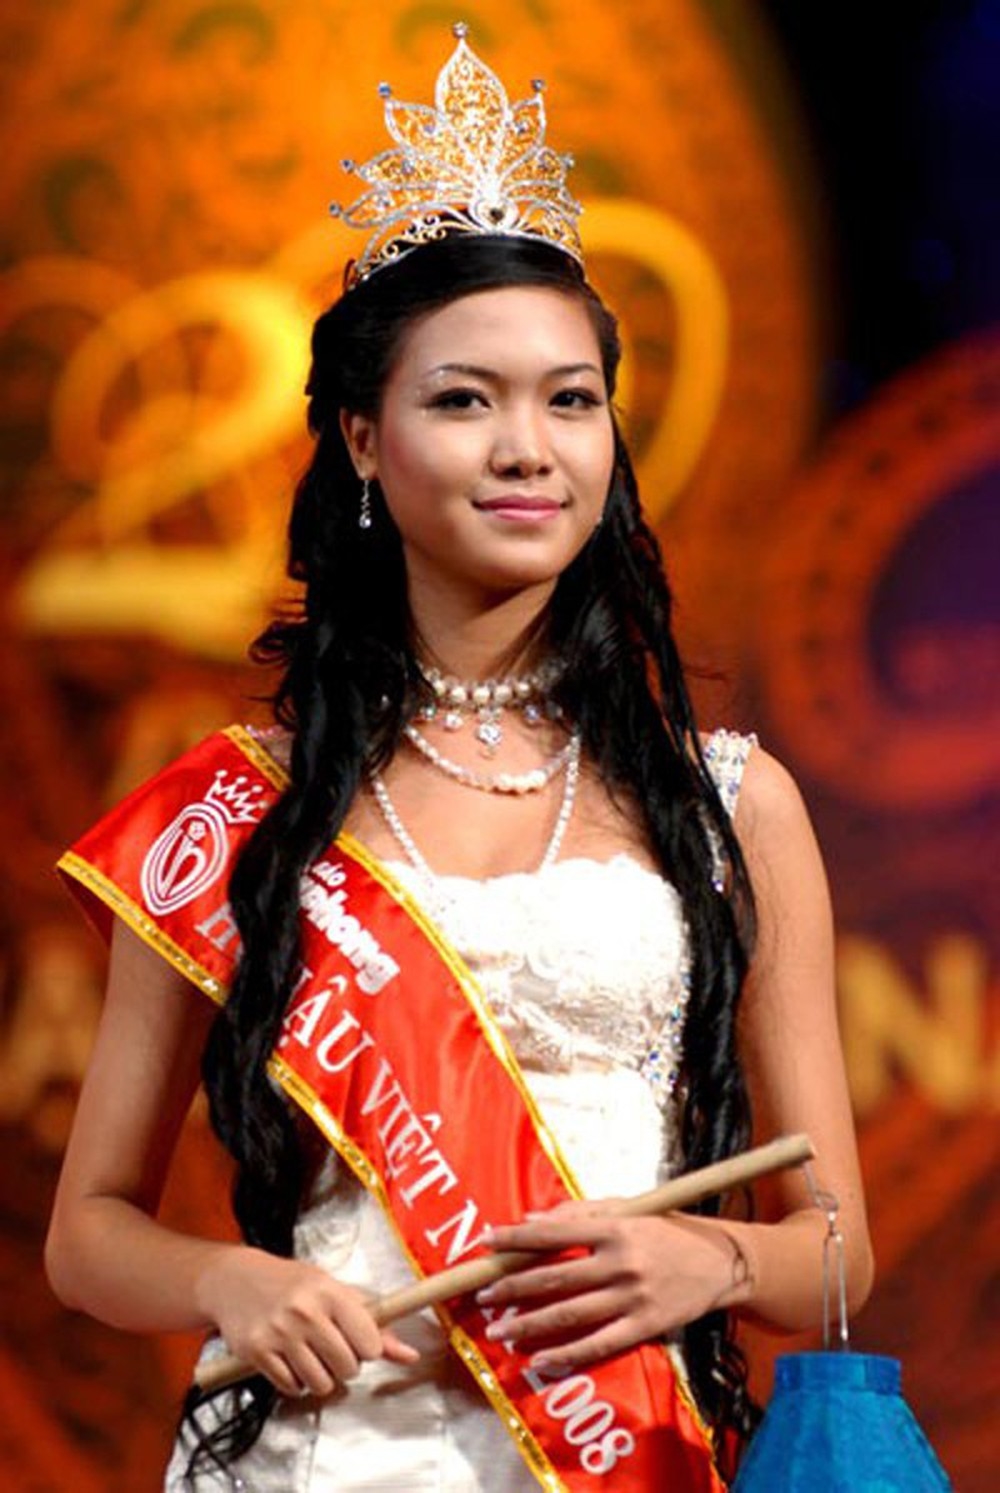 
Trước Tiểu Vy, cách đây 10 năm, Đà Nẵng cũng tự hào chào đón một tân Hoa hậu Việt Nam 2008 - Thùy Dung. Với những ưu thế về cách ứng xử tinh tế, thần thái tự tin cùng chỉ số cơ thể lại cực ấn tượng, không quá khó hiểu khi cô là nàng Hoa hậu đầu tiên của thành phố này.